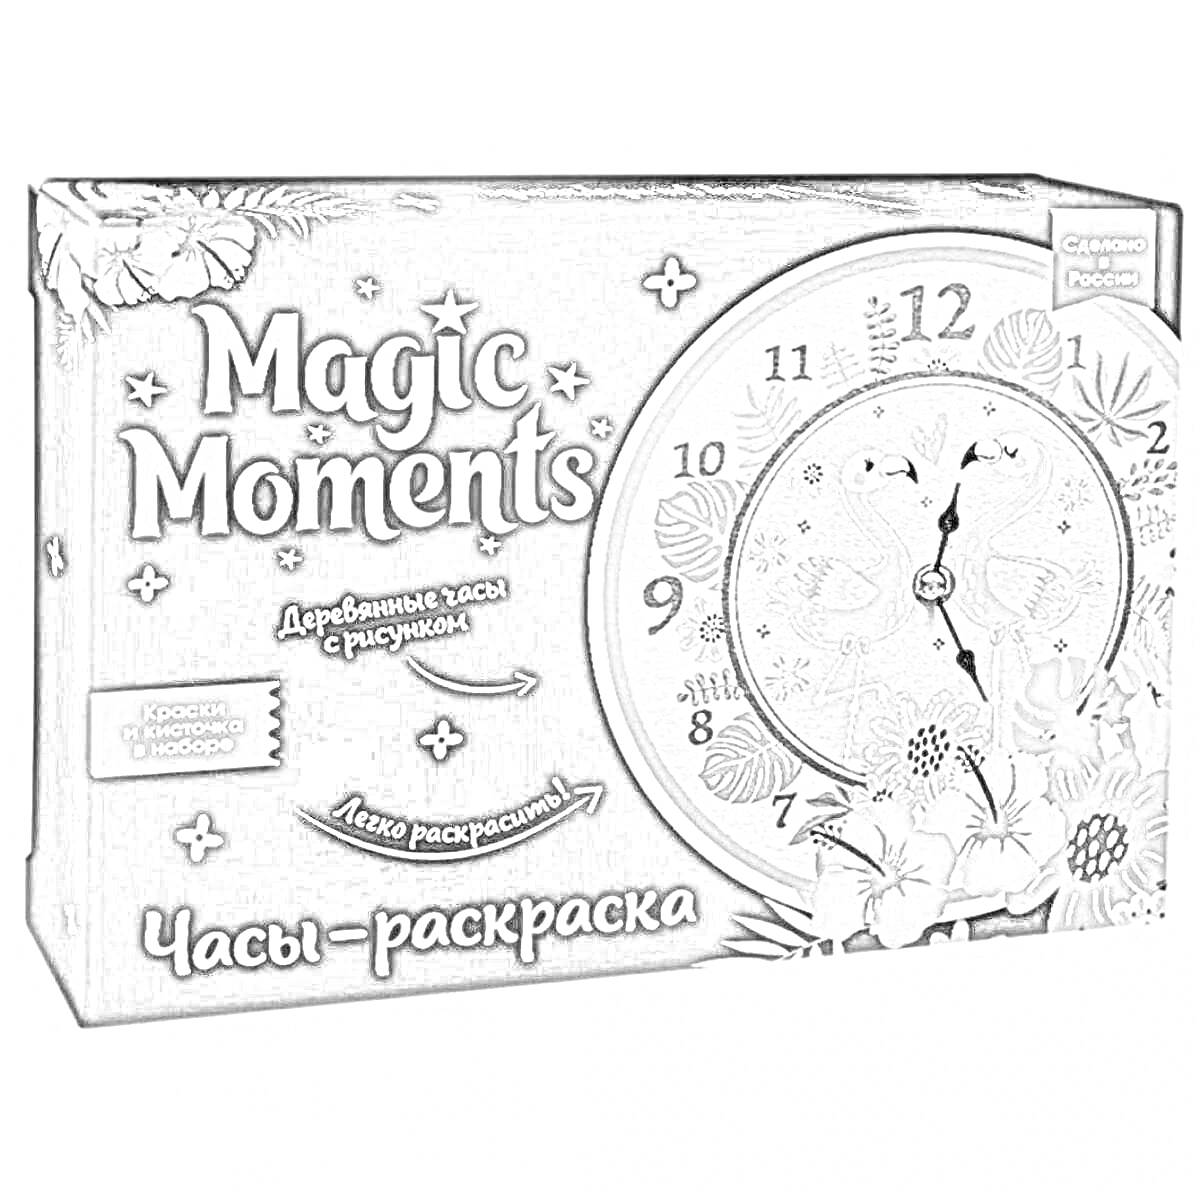 Раскраска Magic Moments деревянные часы с рисунком для раскрашивания (изображены птицы, цветы и дерево)